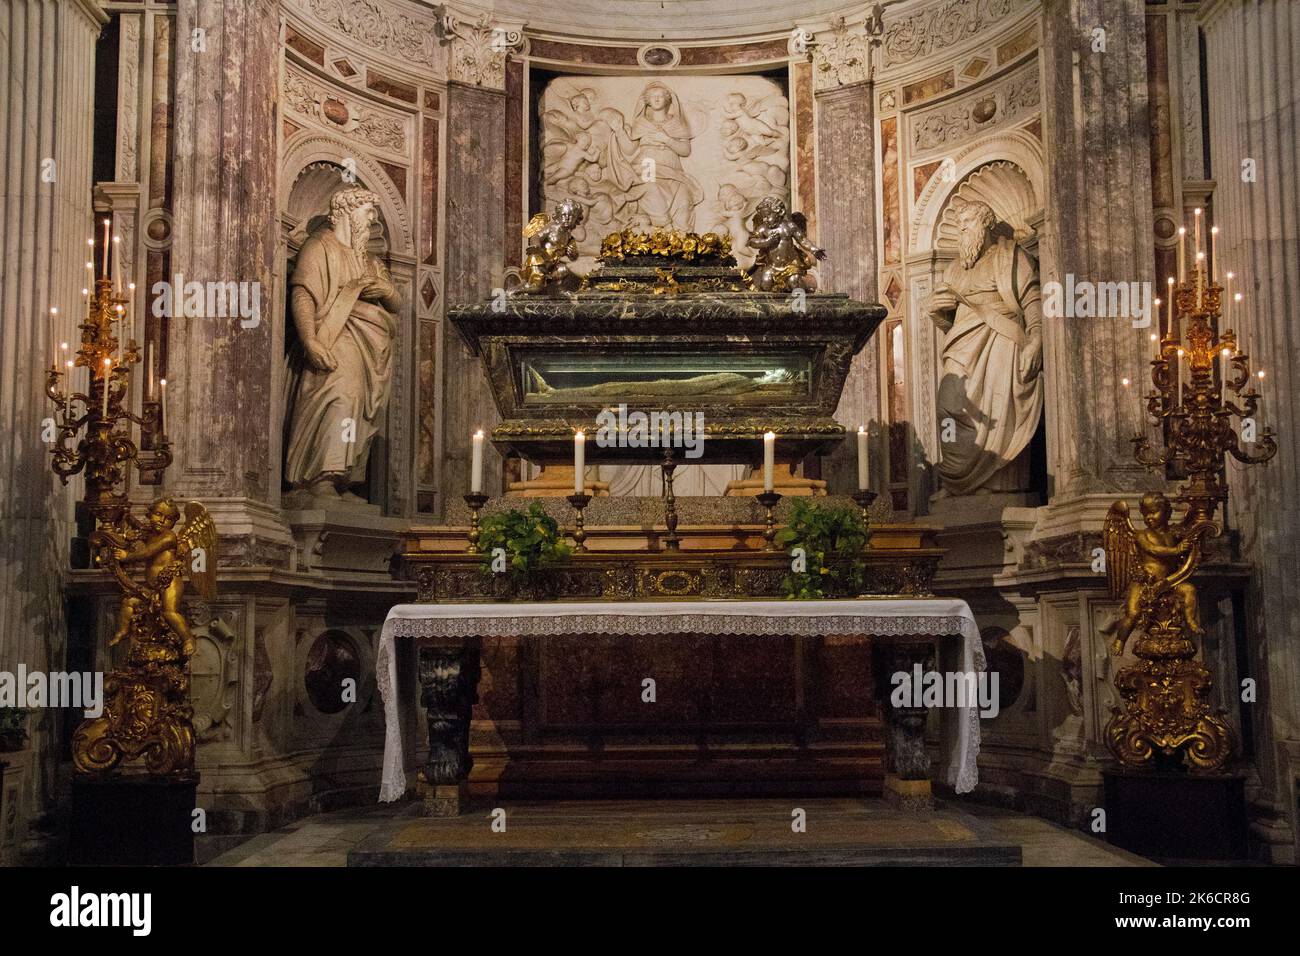 Altargrab des Heiligen Rainerius, des schutzpatrons von Pisa und der Reisenden in der mittelalterlichen römisch-katholischen Kathedrale von Pisa, dem Duomo di Pisa Stockfoto